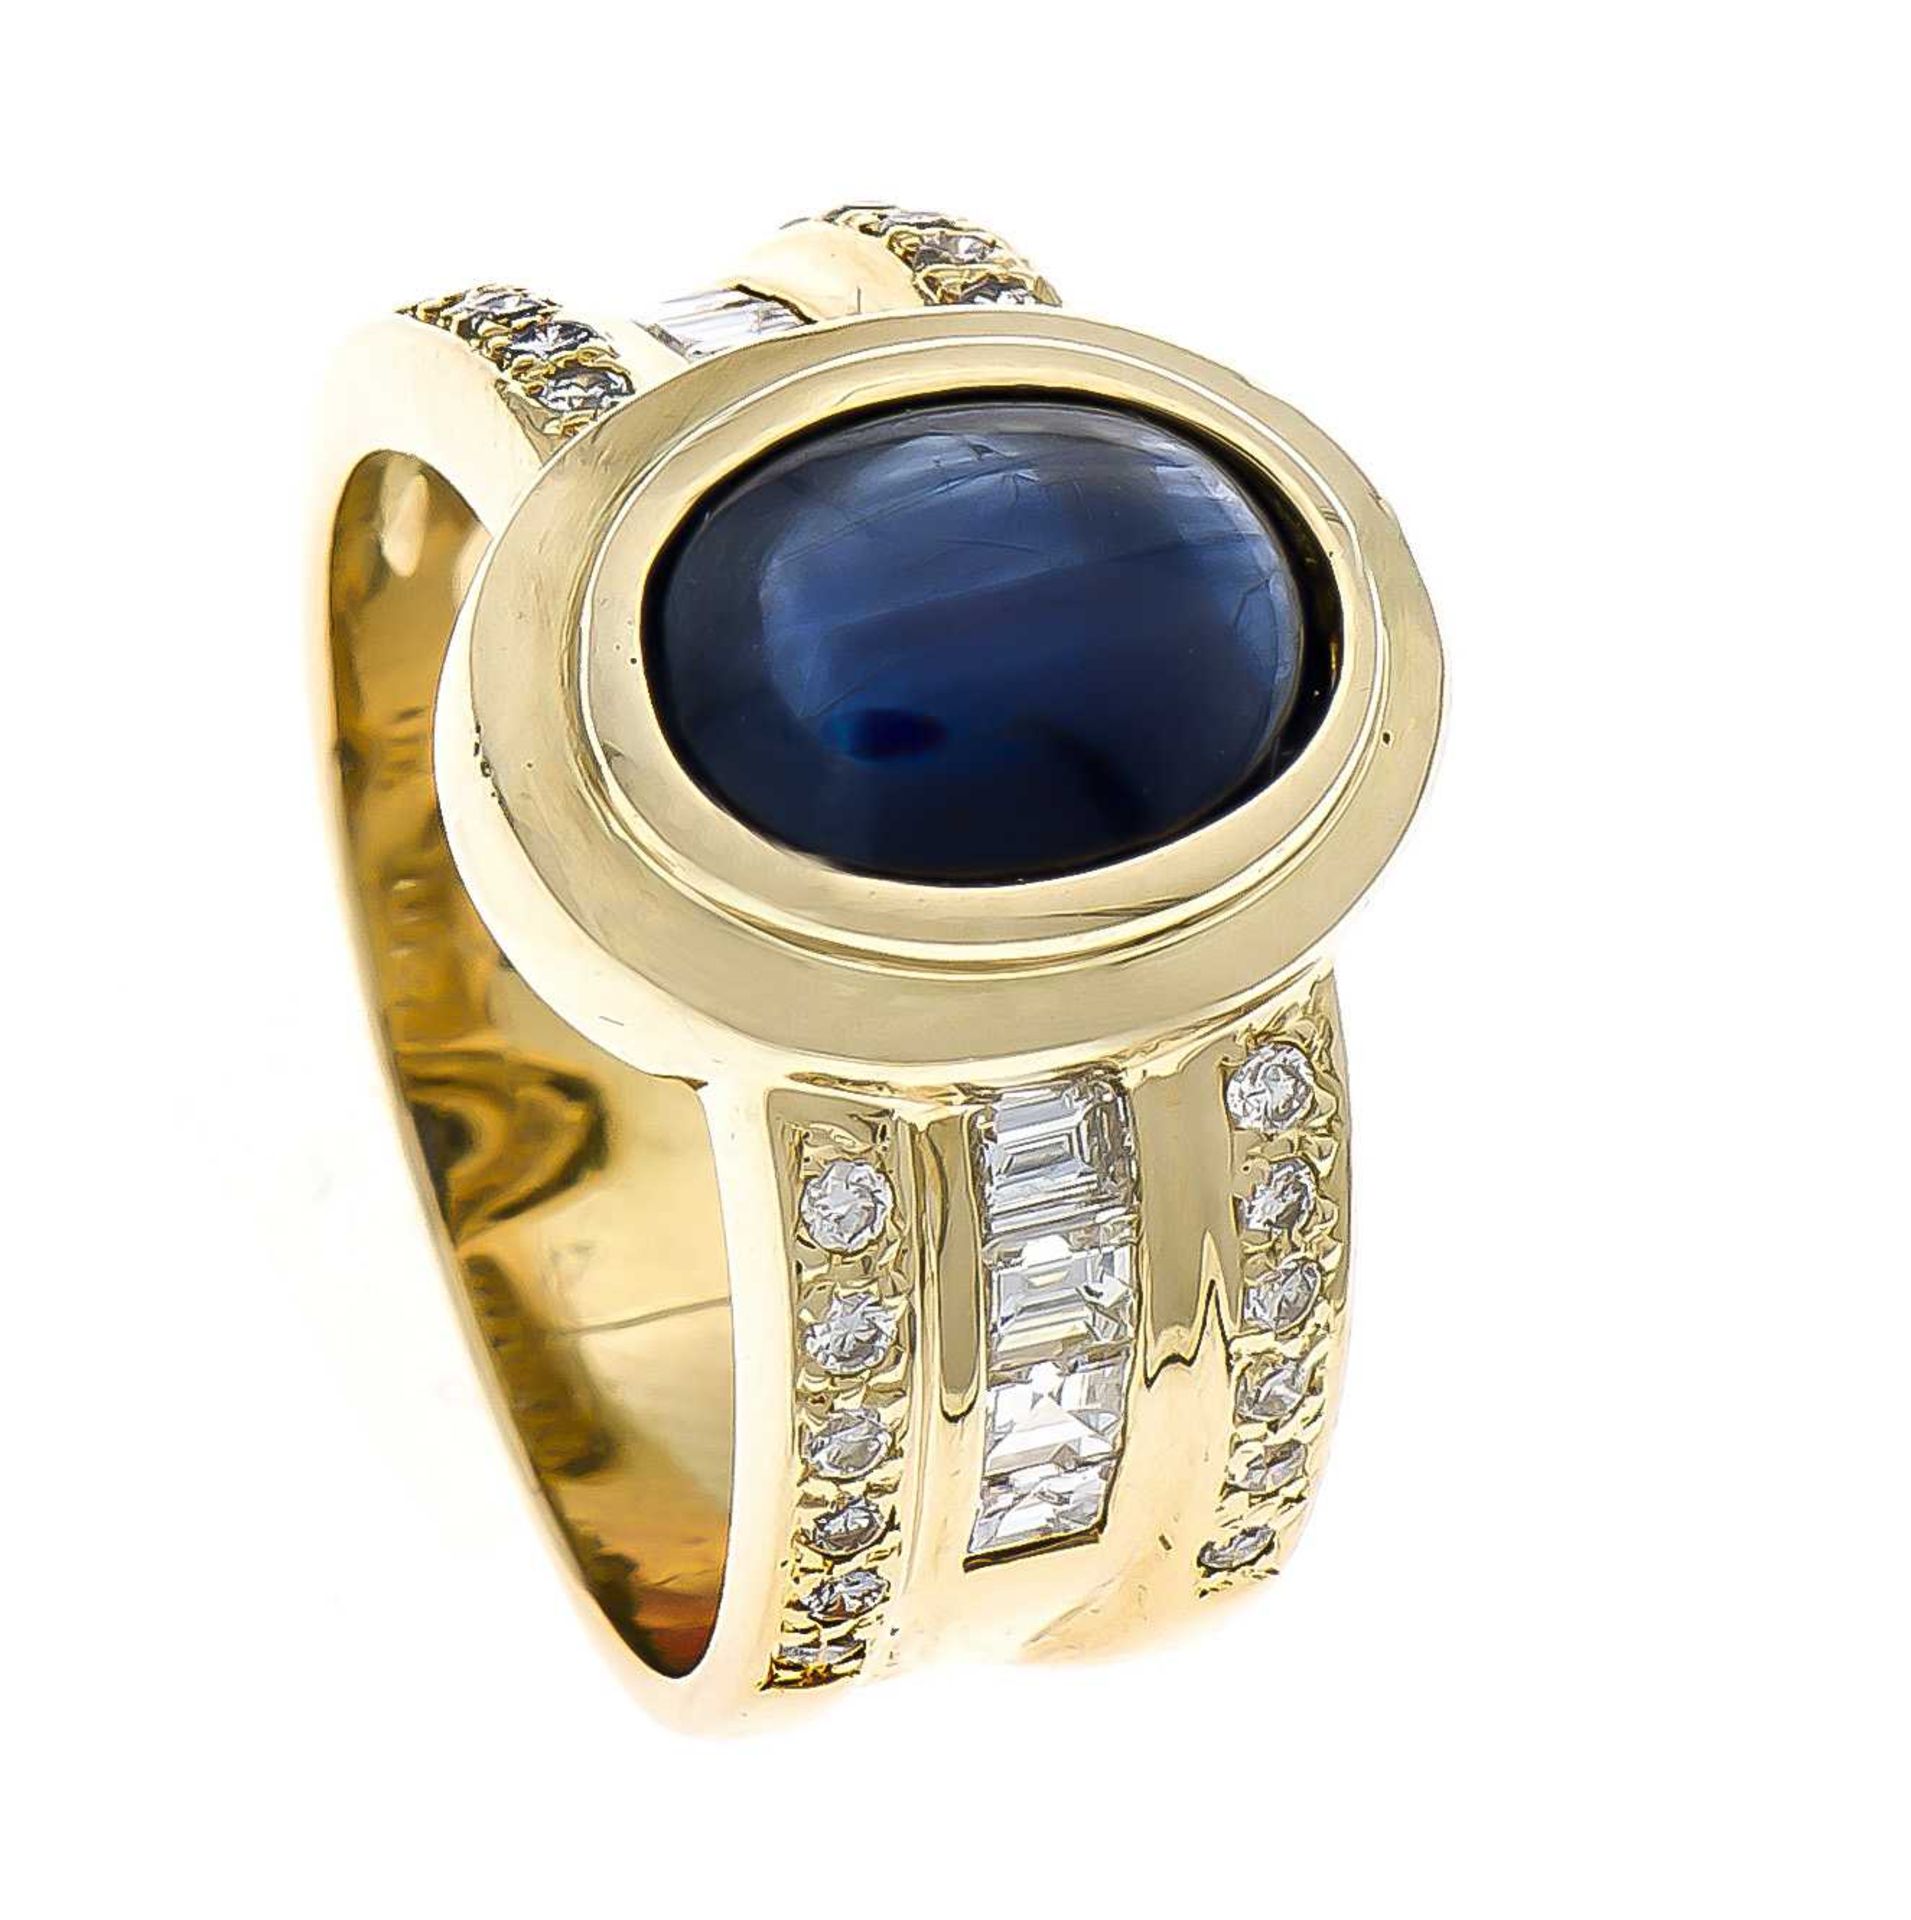 Saphir-Brillant-Ring GG 750/000 mit einem feinen Saphircabochon 10 x 7 mm in sehr guter Farbe und